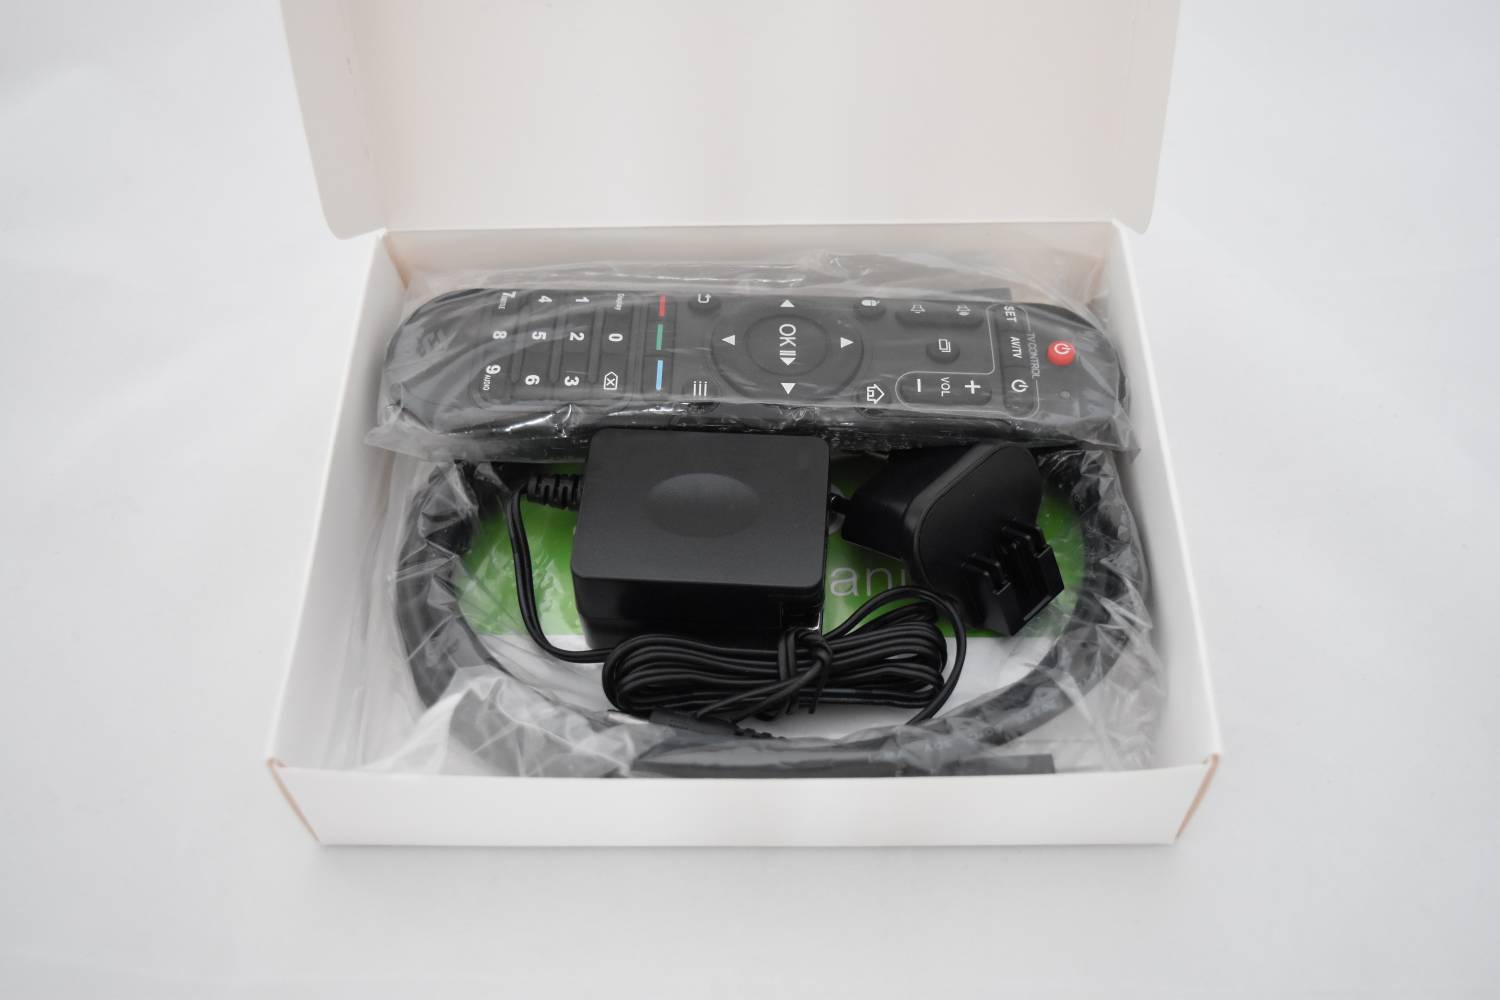 TomTop: IP TV-Box Zidoo X6 Pro – мал, да удал